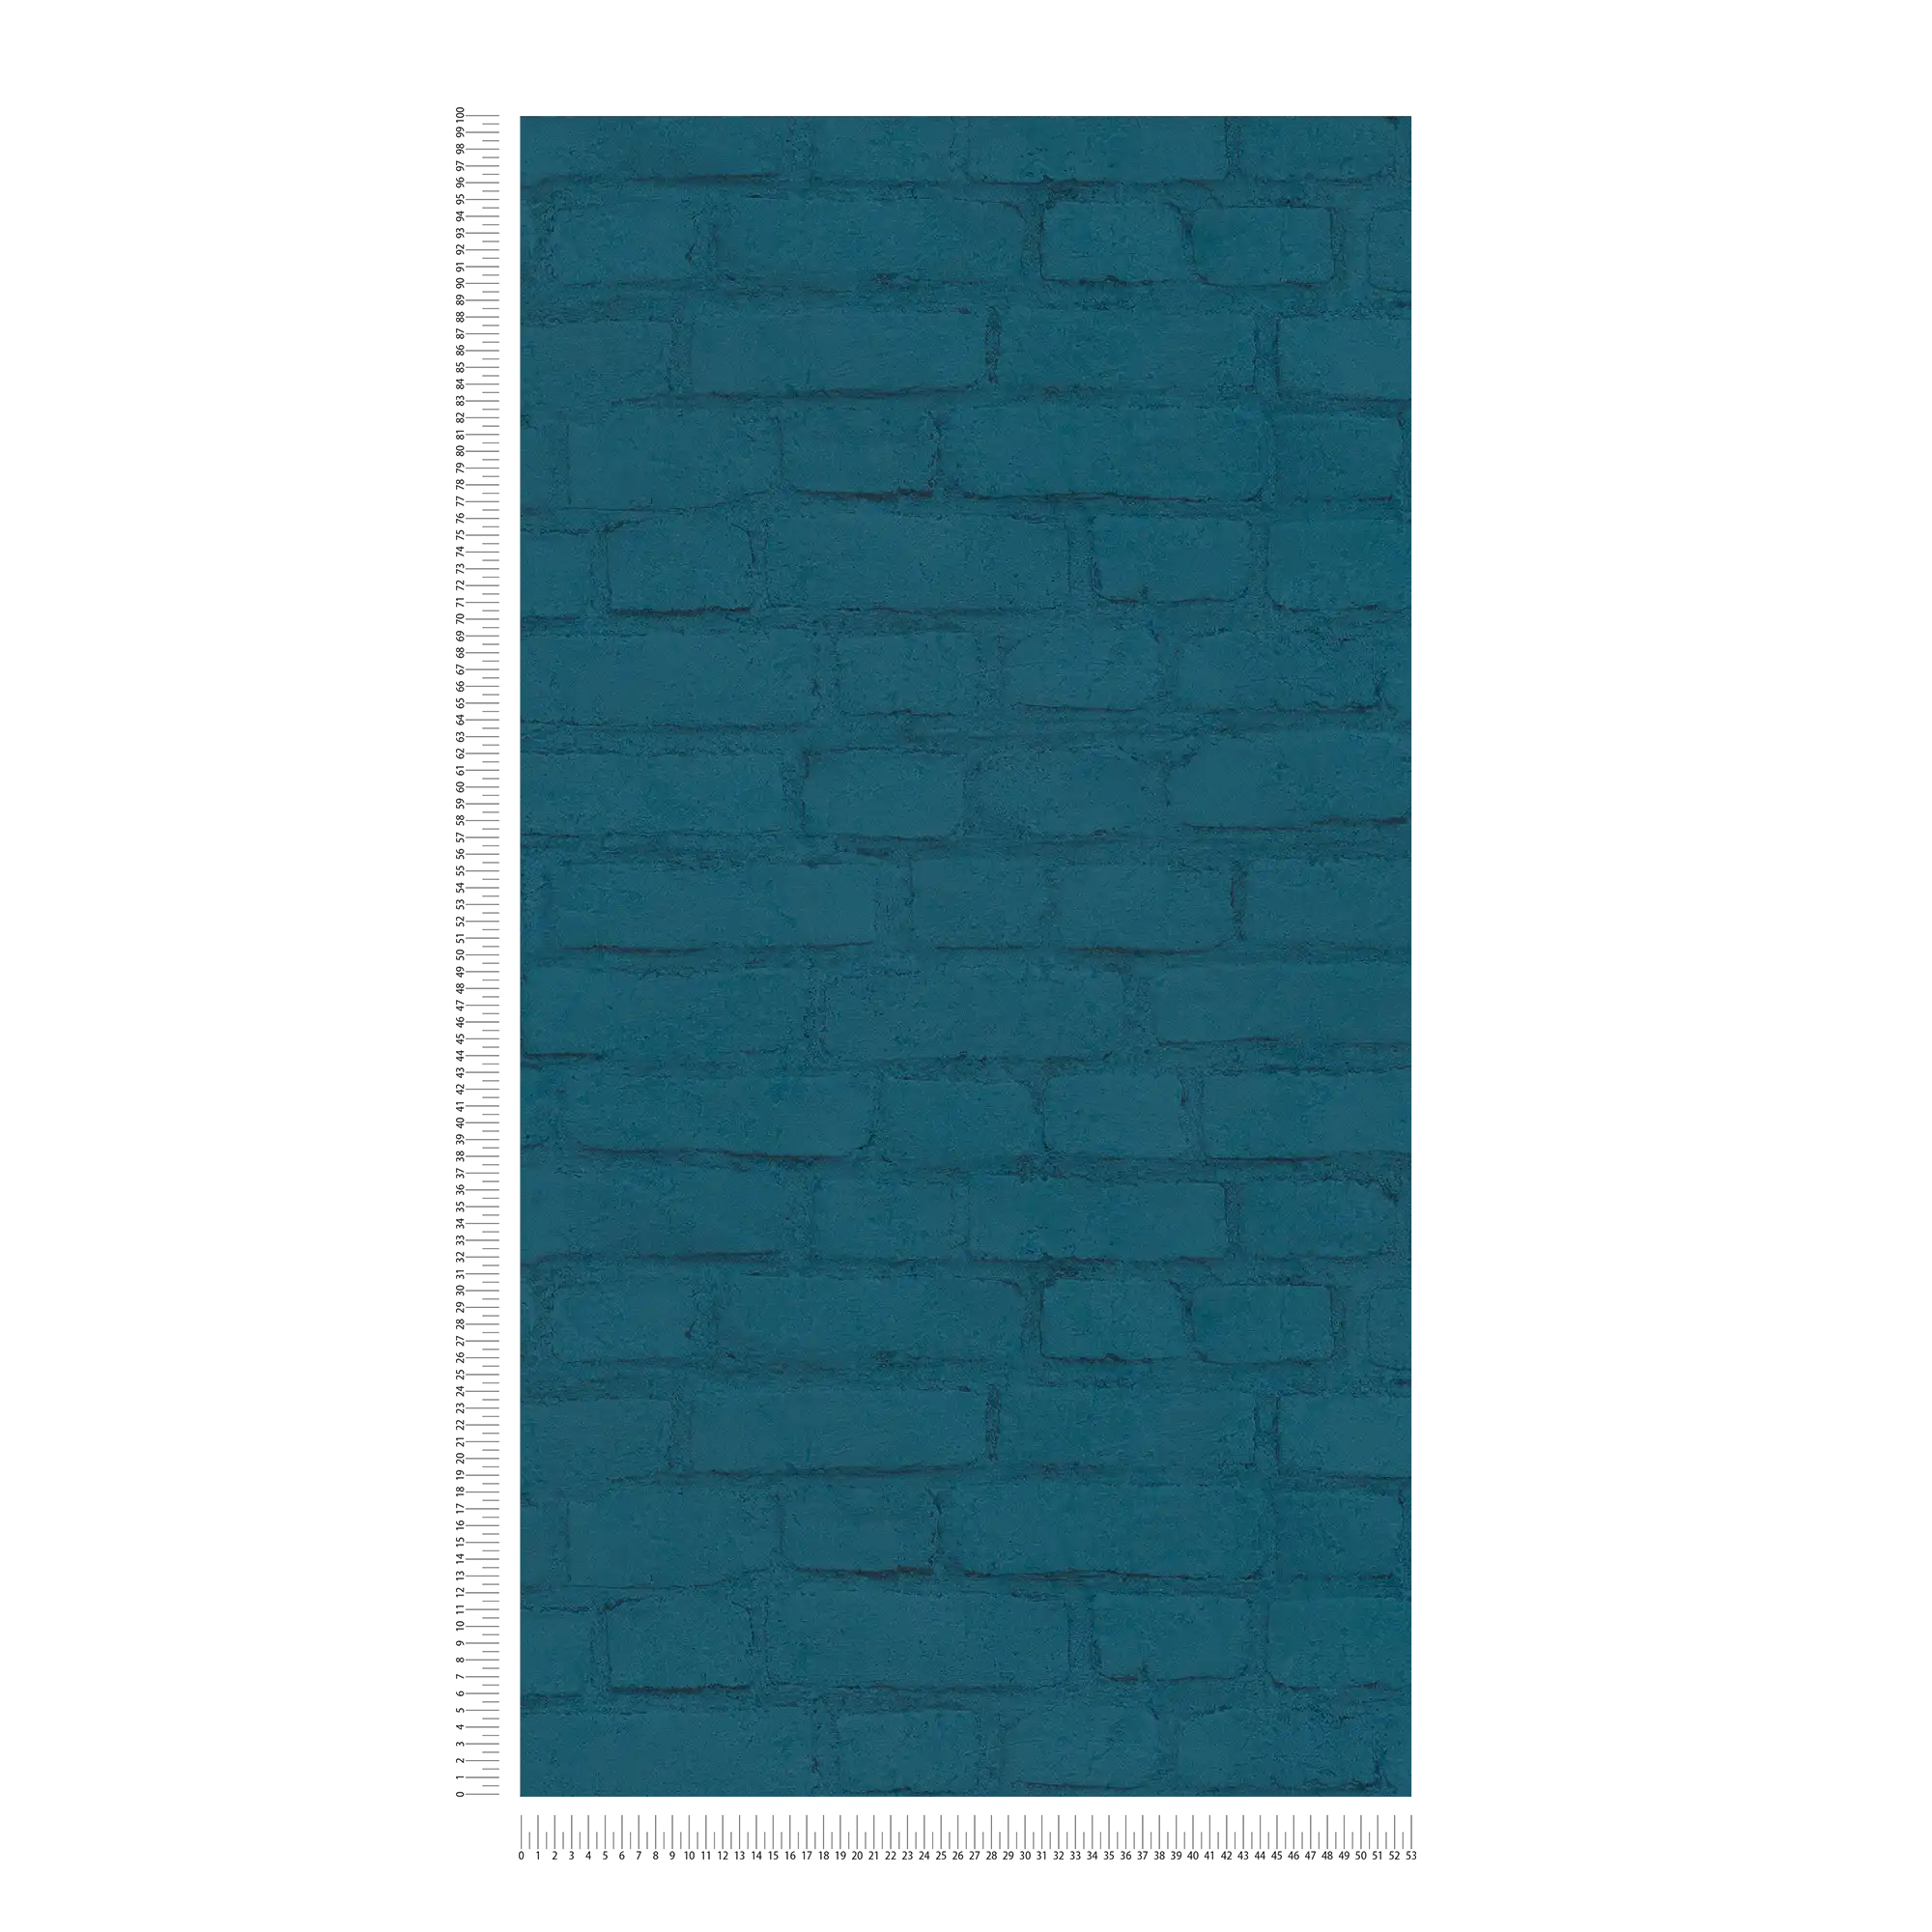             Stone wallpaper wall in clinker look - blue
        